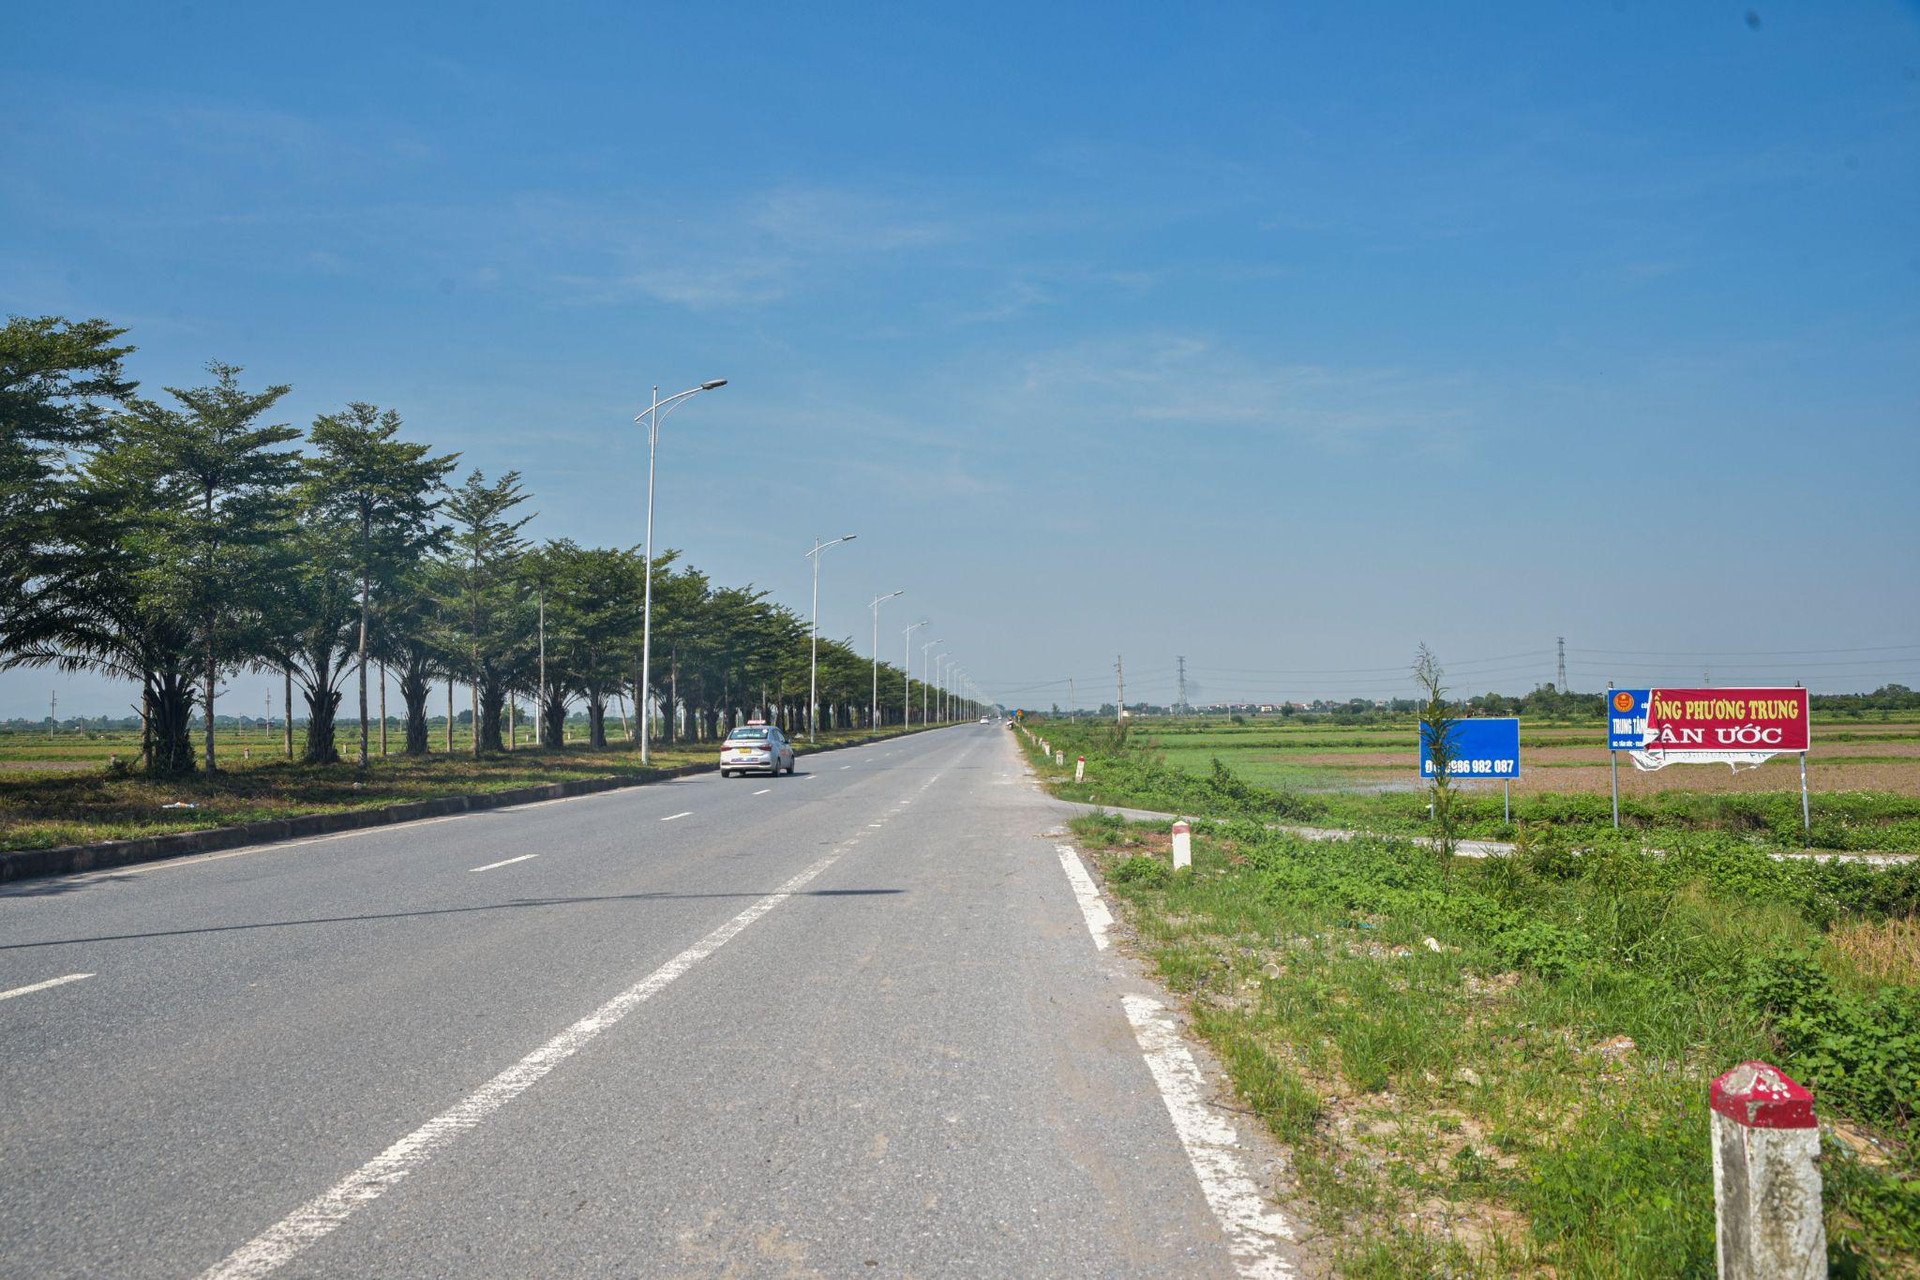 ‏Toàn cảnh khu vực được đề xuất xây dựng sân bay thứ 2 tại Hà Nội - Ảnh 8.